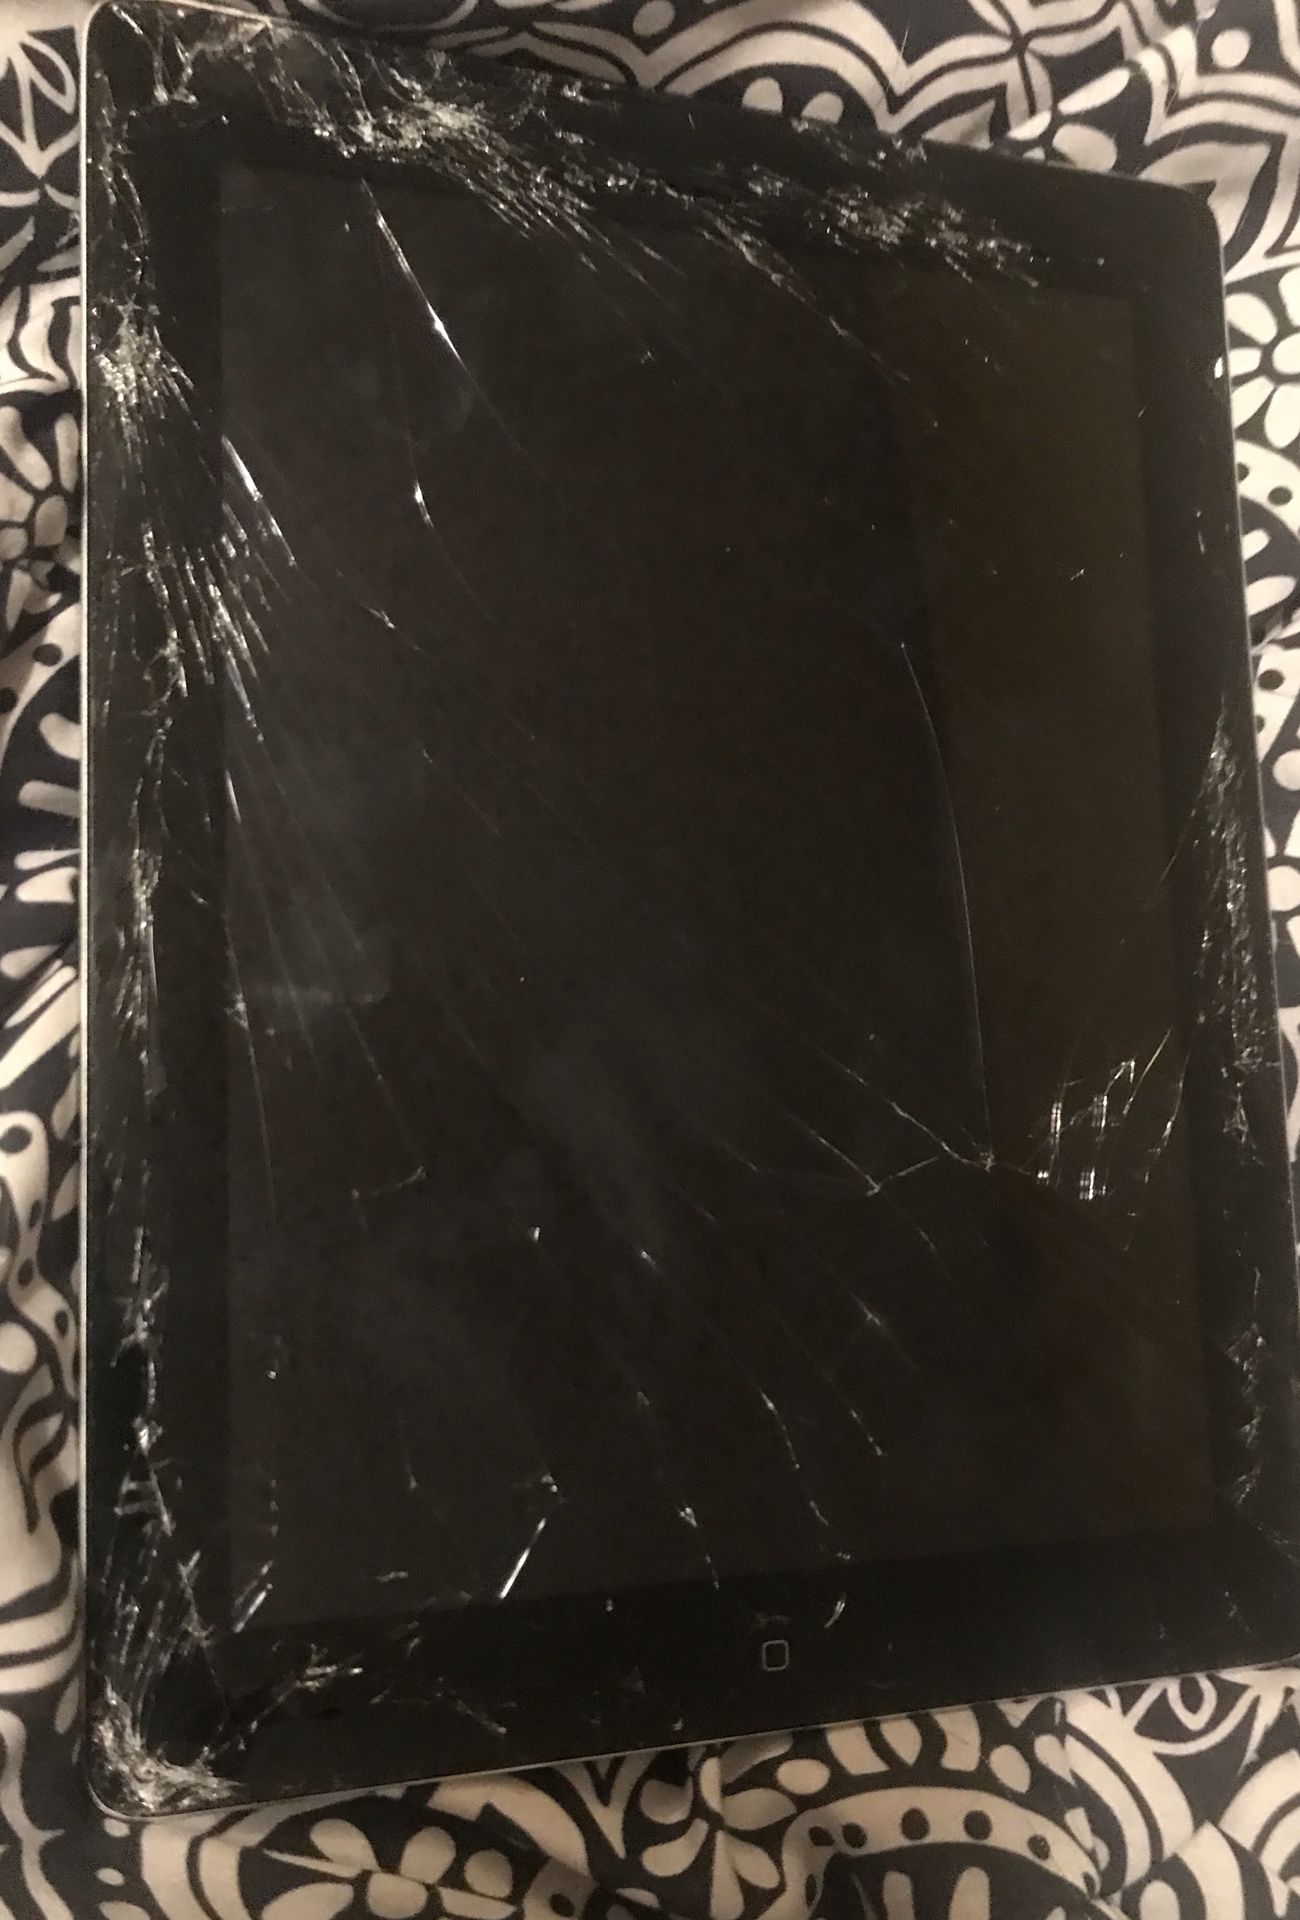 iPad 4 - Broken screen